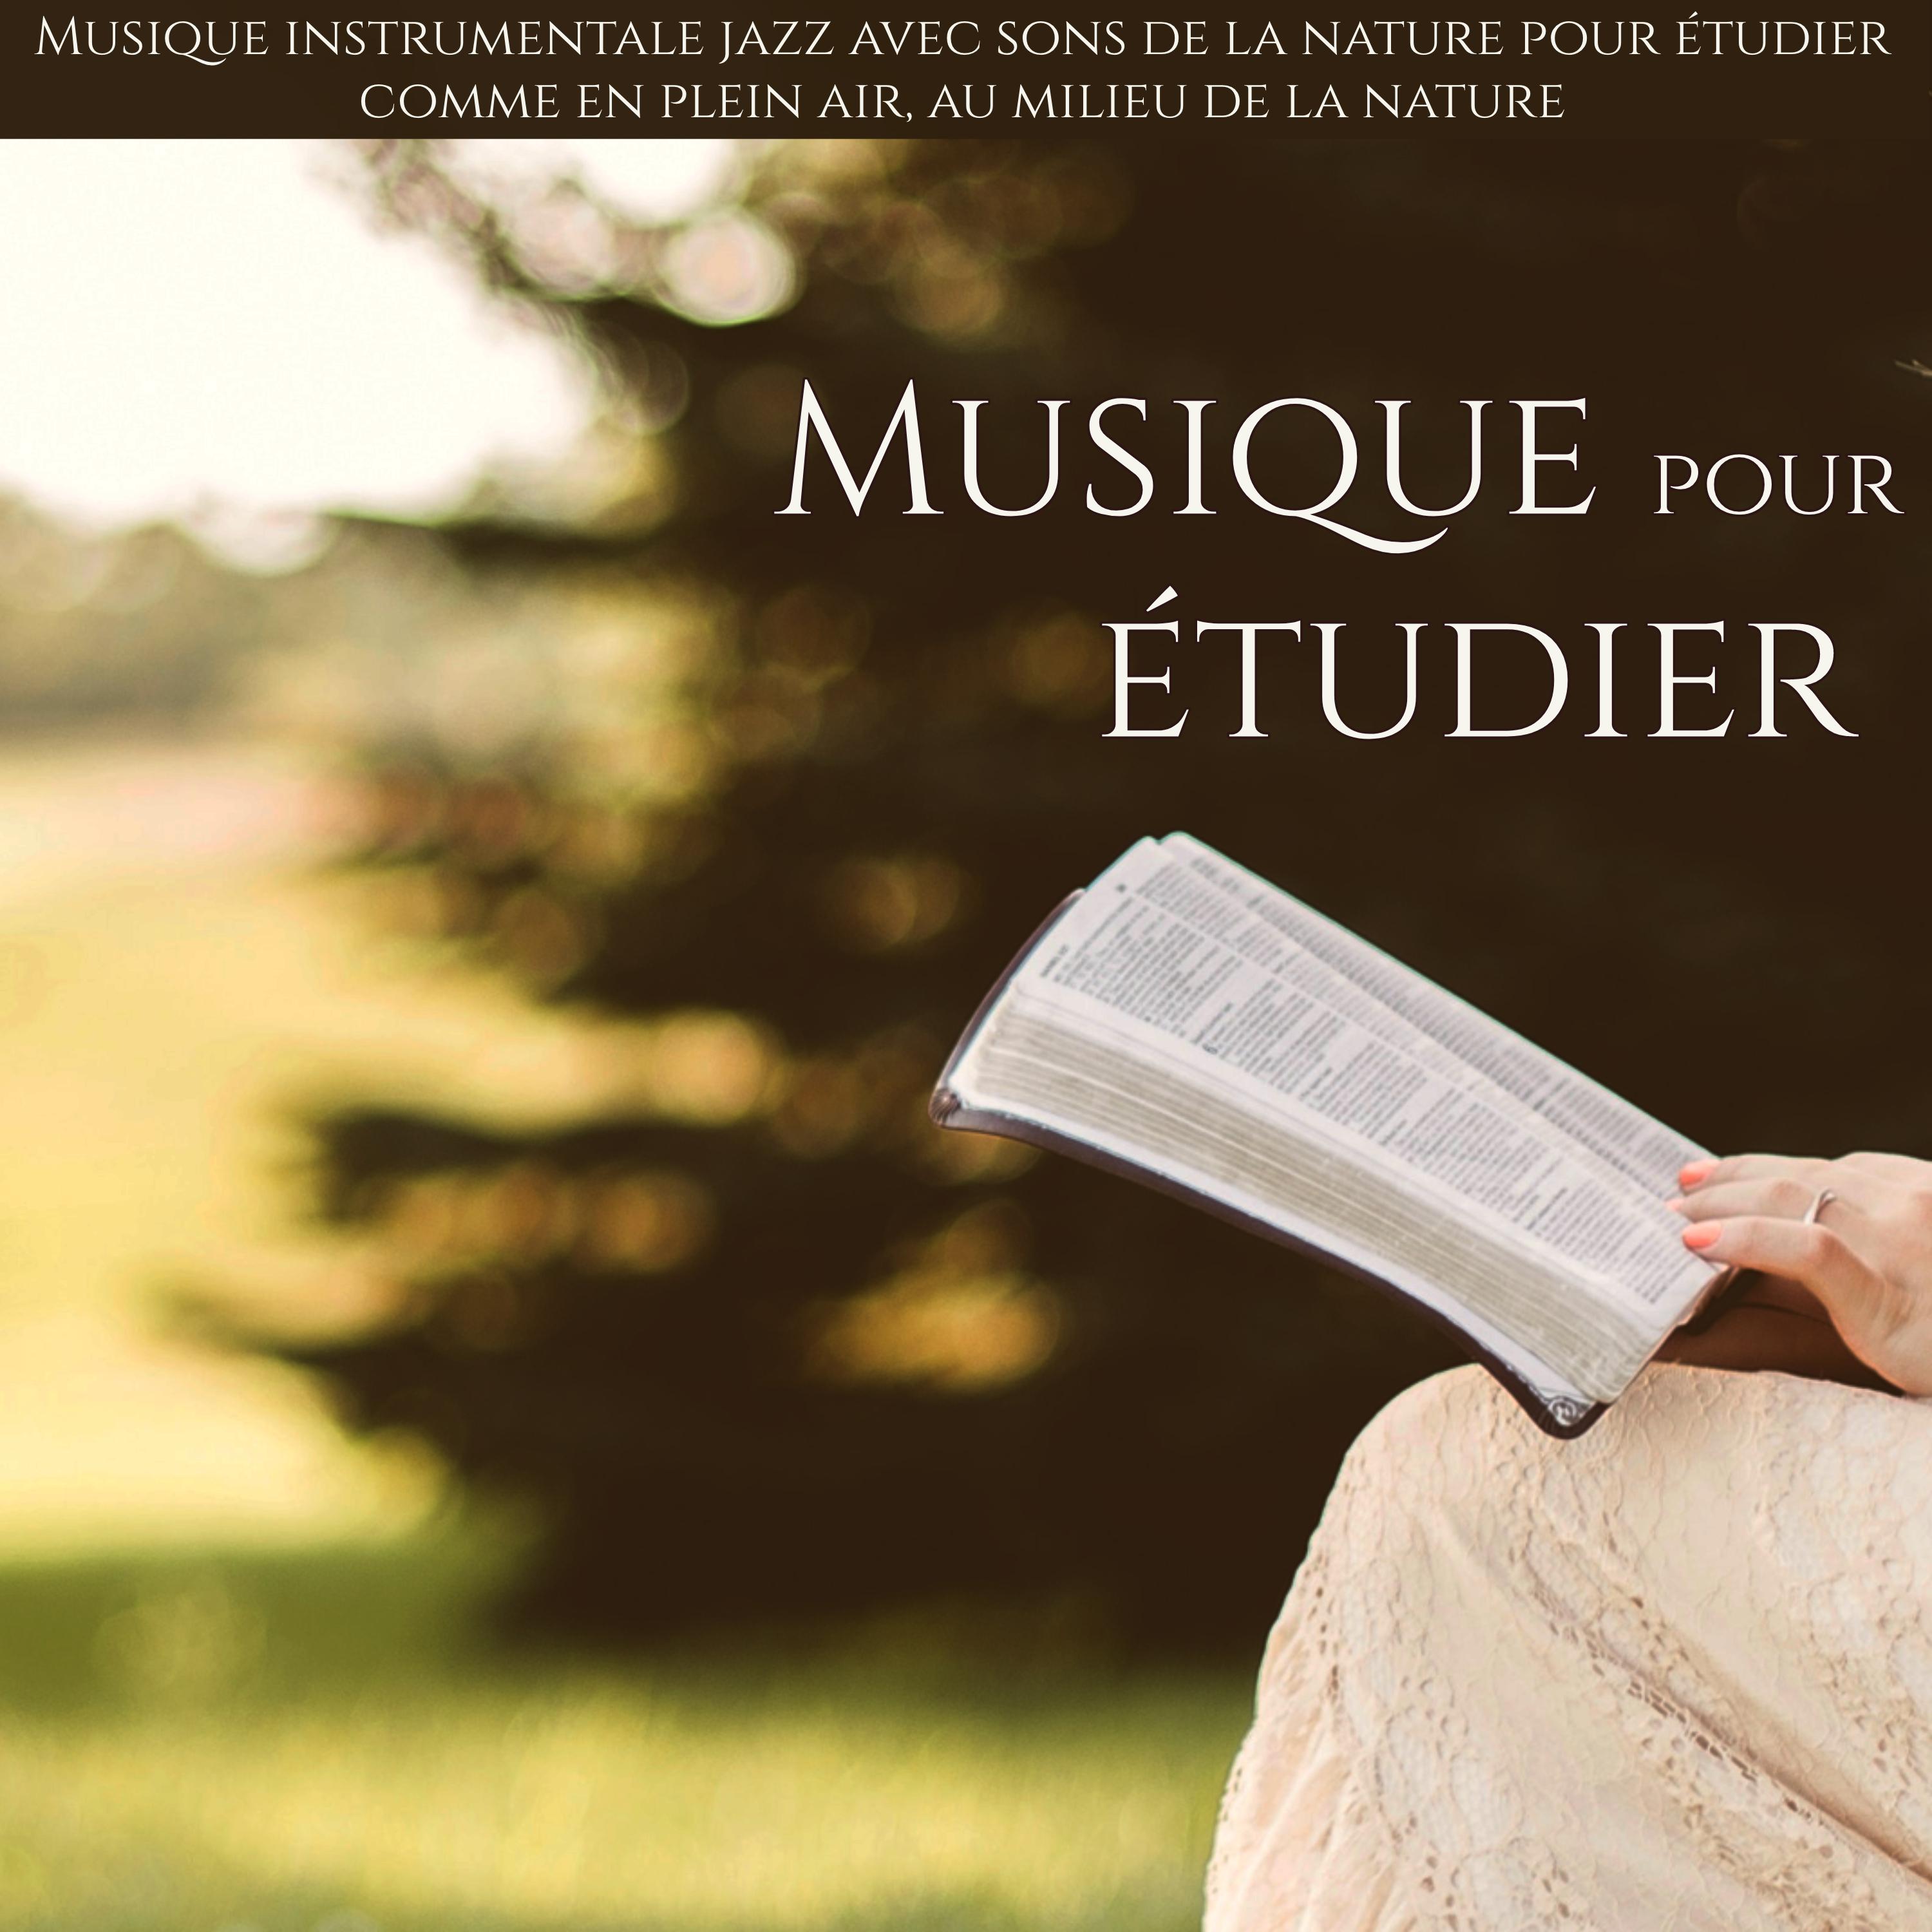 Musique pour e tudier  Musique instrumentale jazz avec sons de la nature pour e tudier comme en plein air, au milieu de la nature